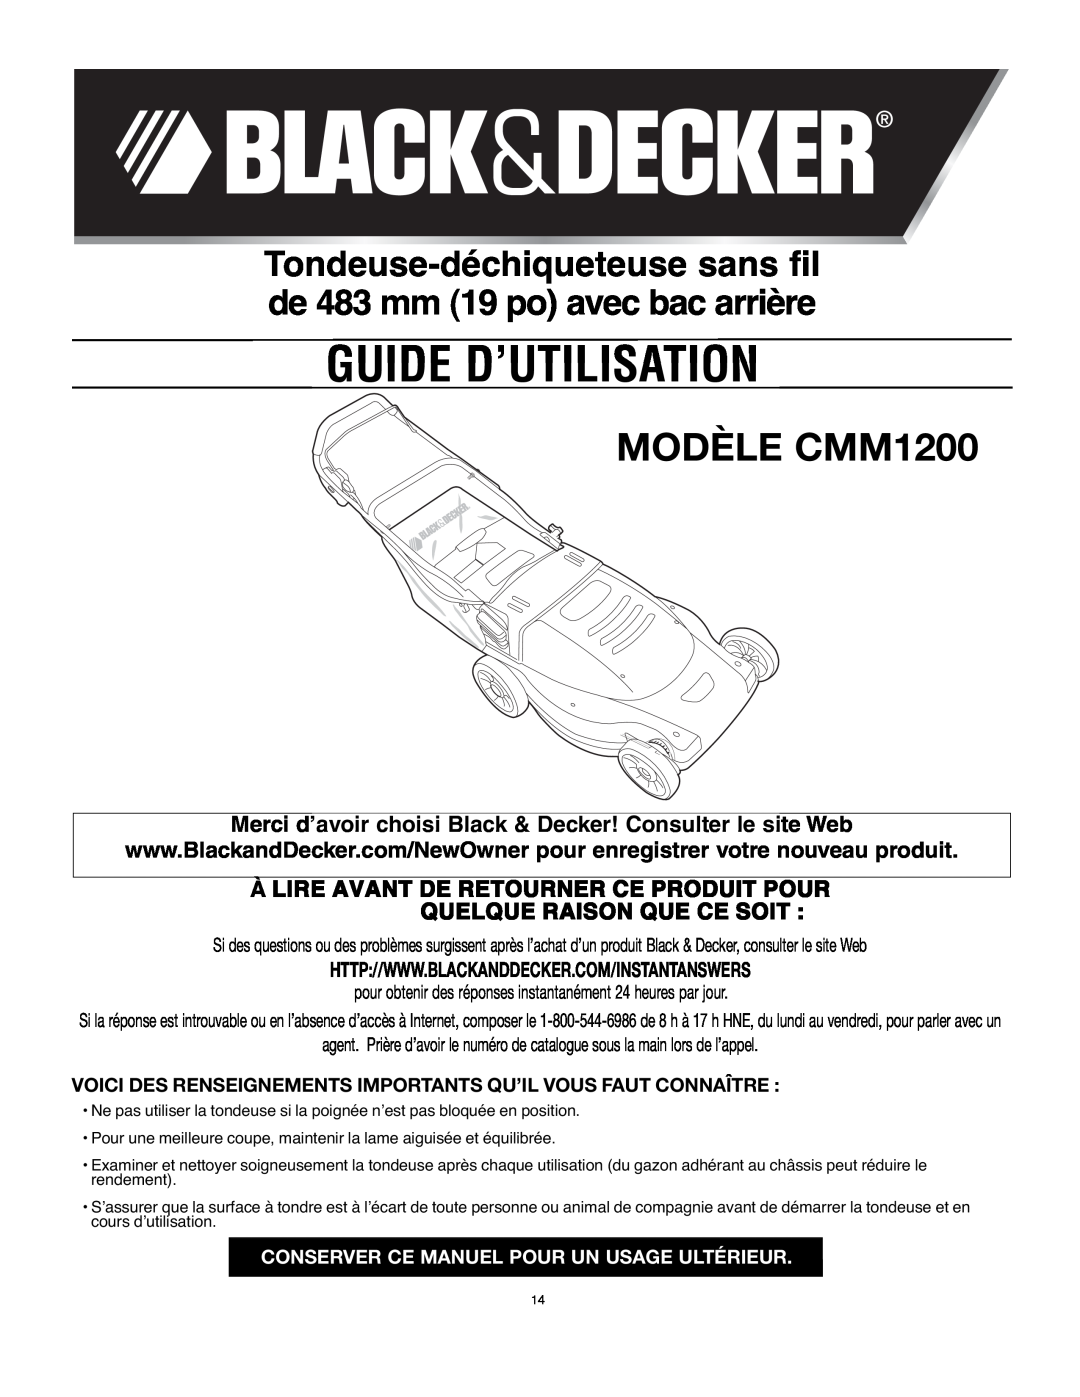 Black & Decker 90541667 Guide D’Utilisation, MODÈLE CMM1200, Merci d’avoir choisi Black & Decker! Consulter le site Web 